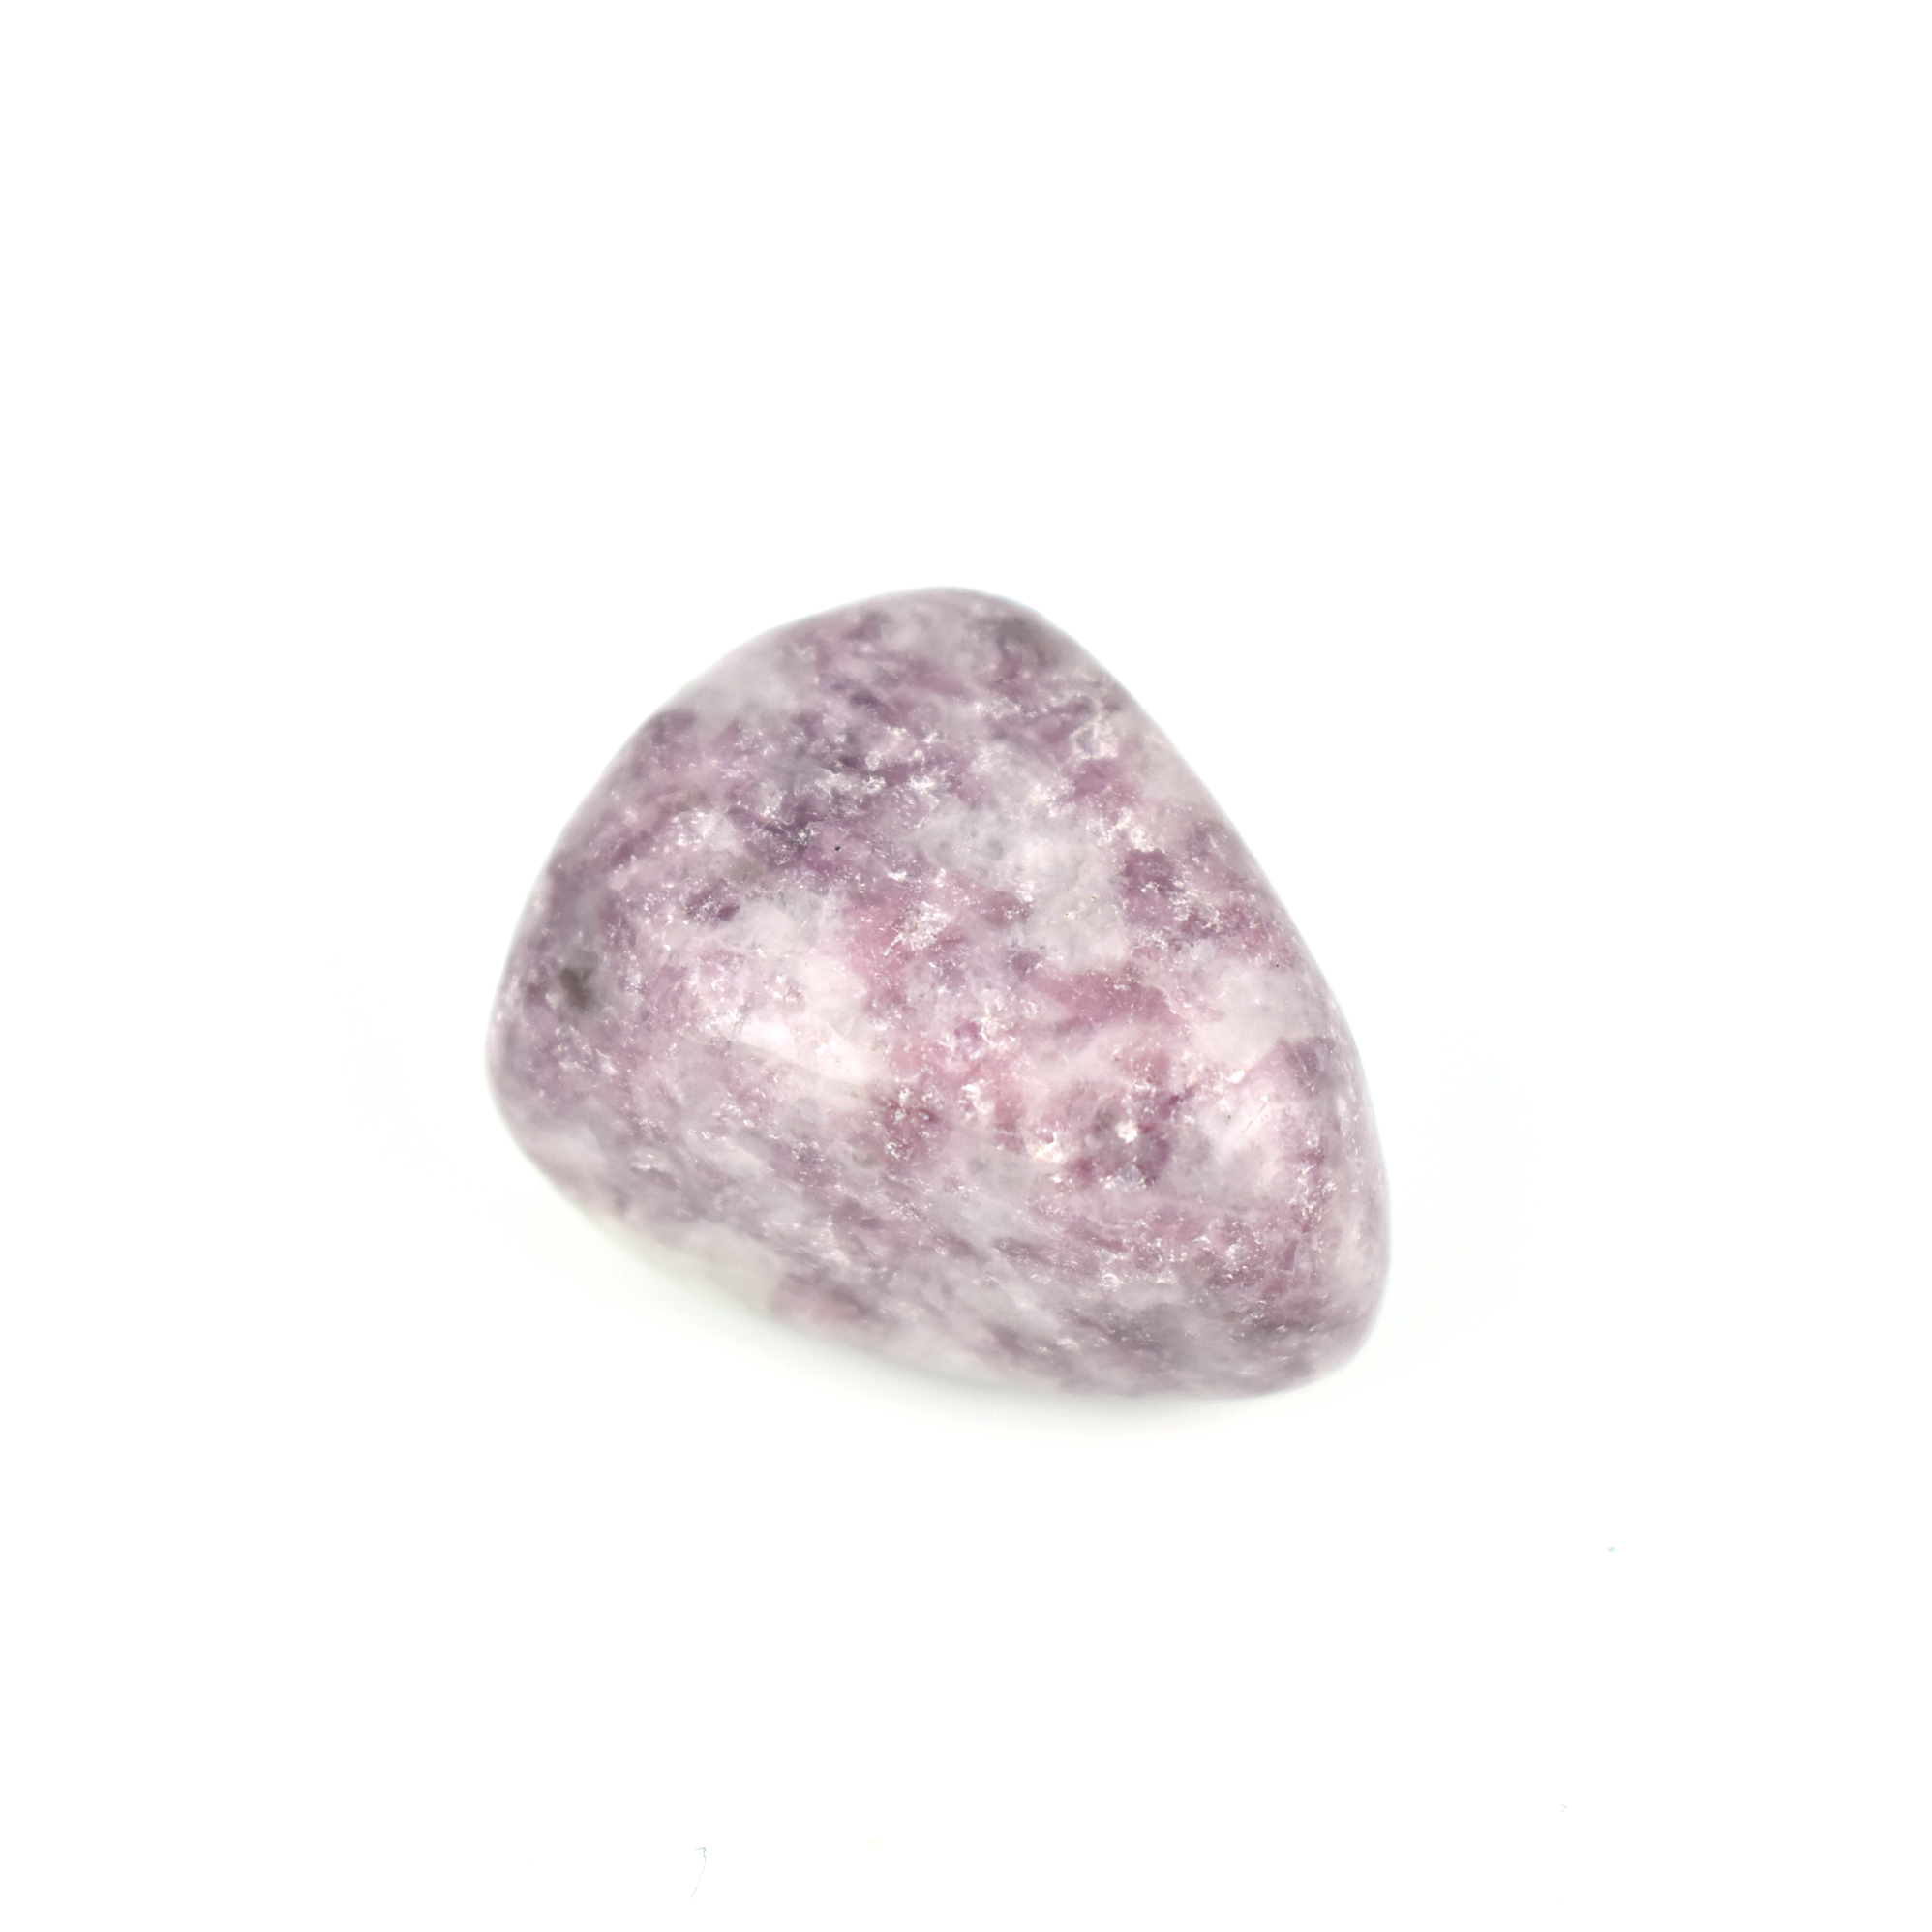 Tumbled Lepidolite - Lepidolite Tumbled Stone